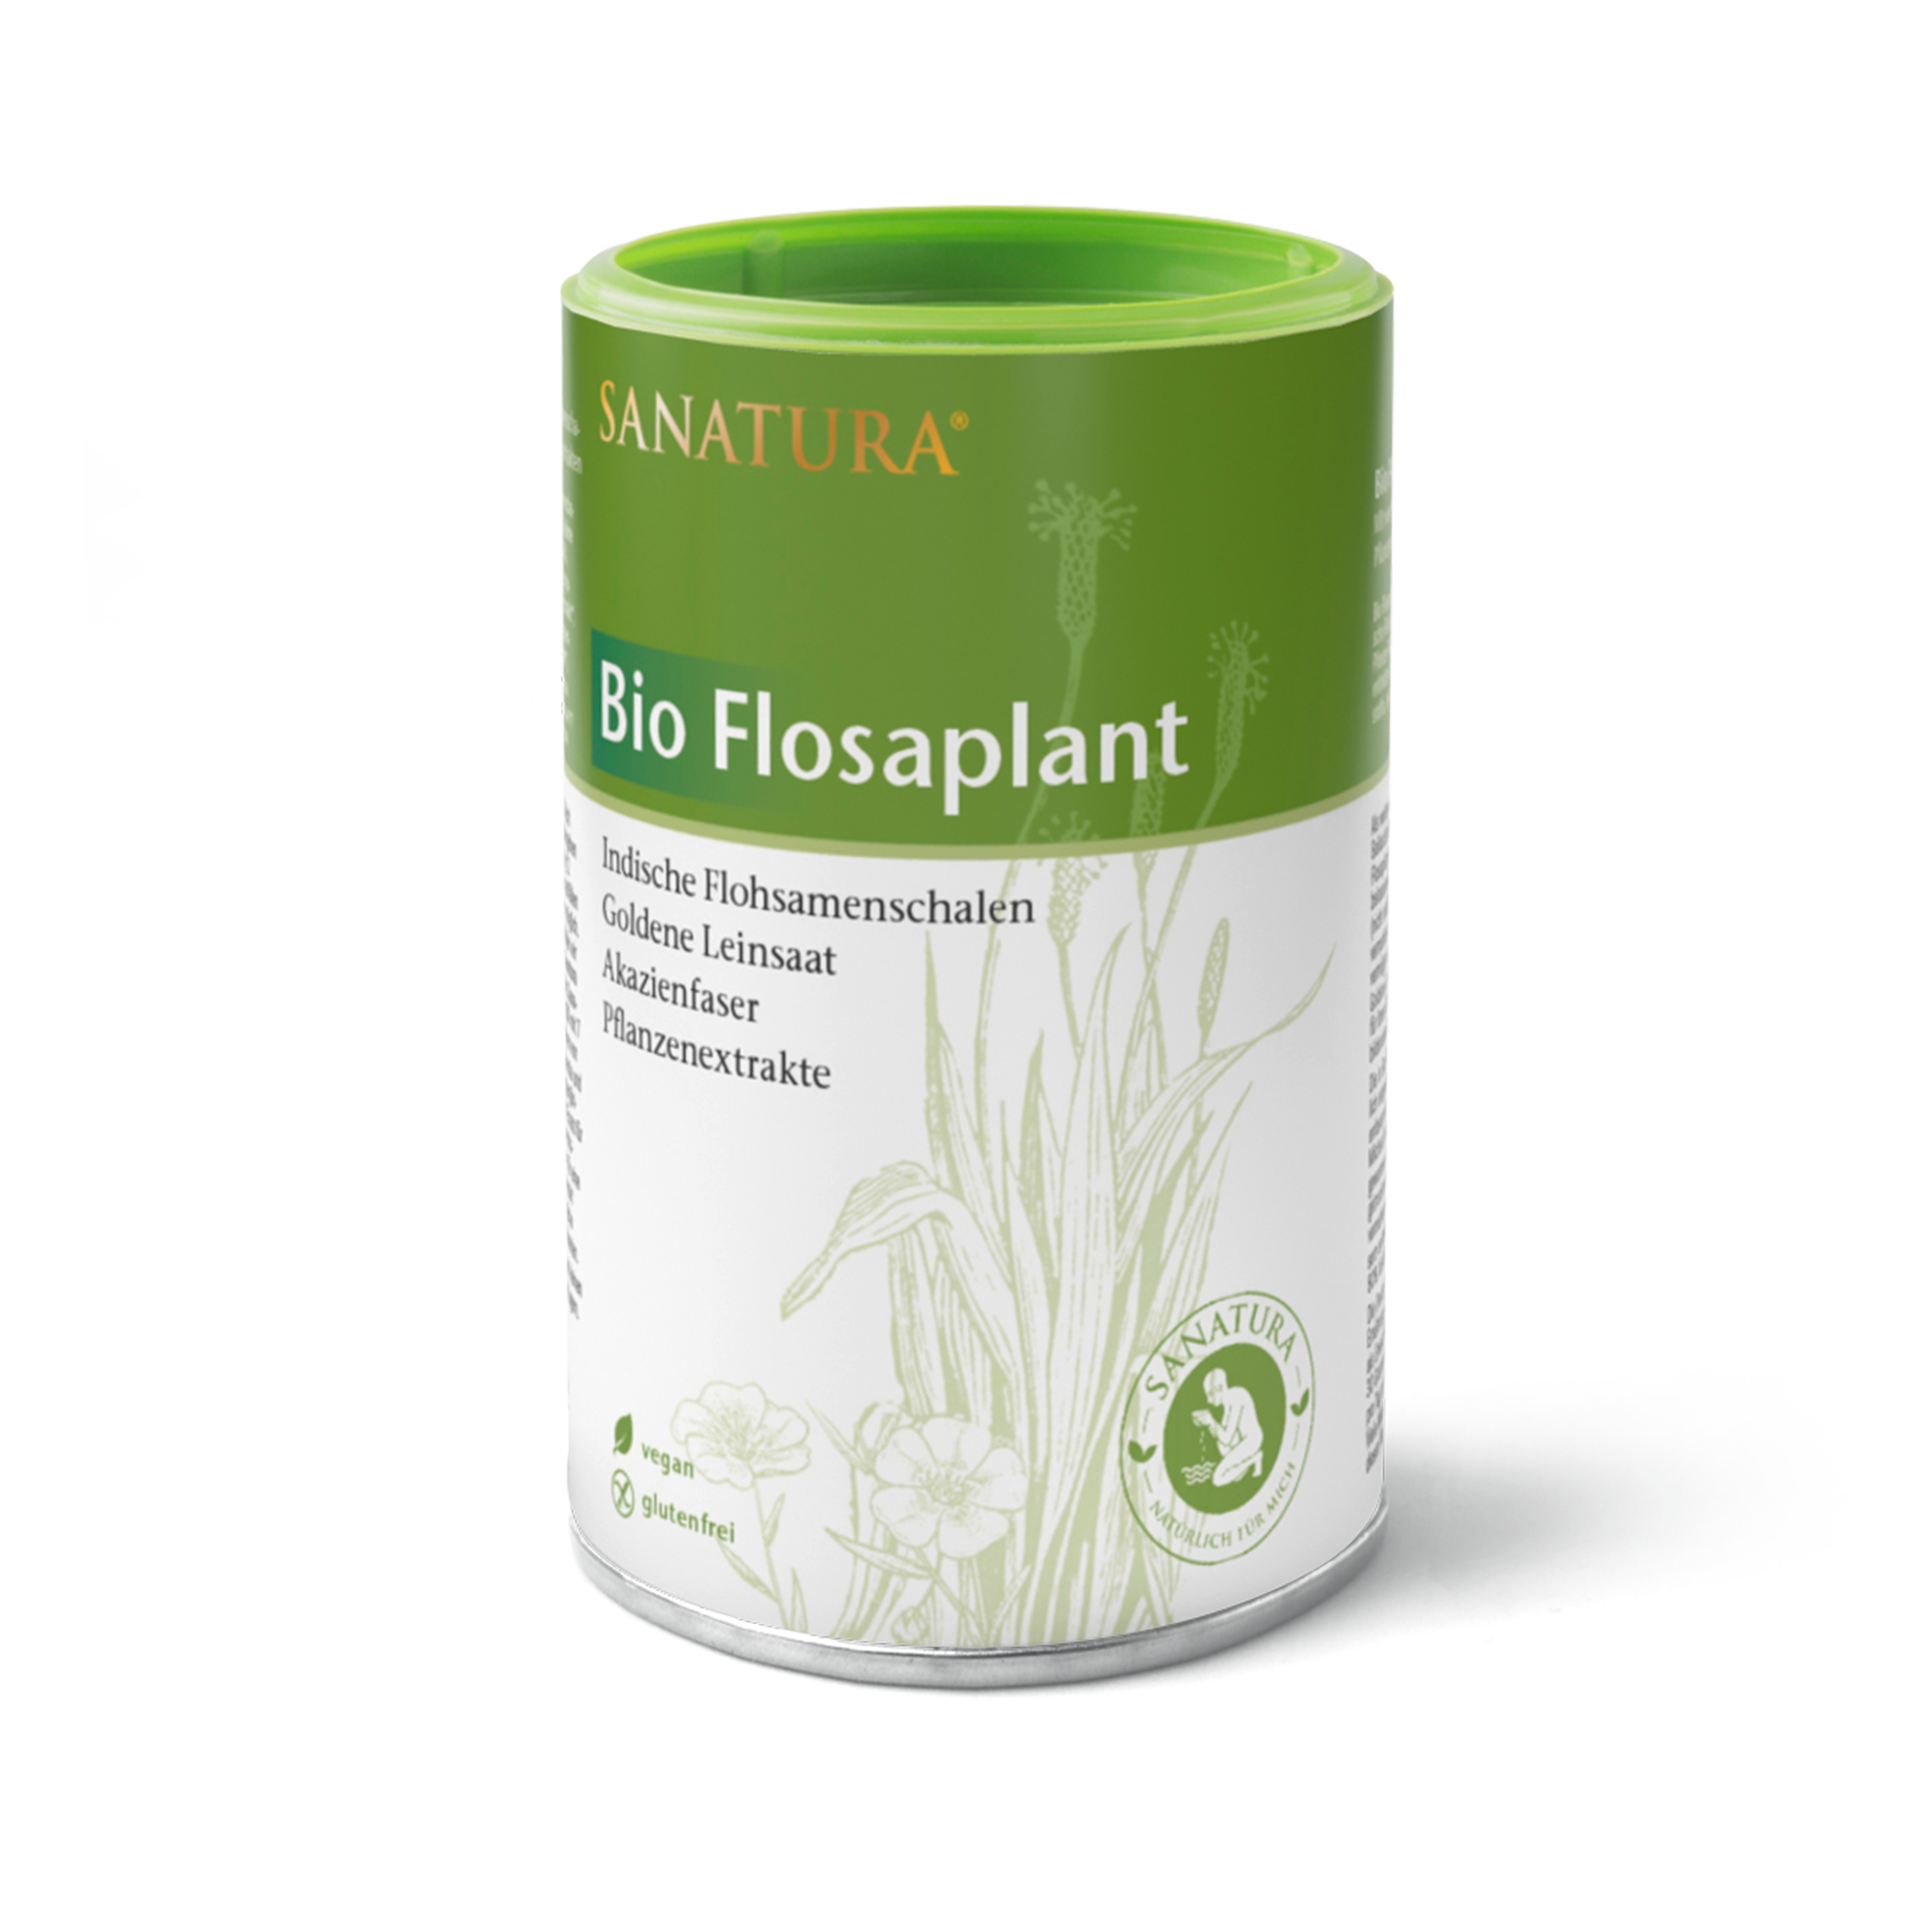 Sanatura Flosaplant | 200g | Reich an löslichen Ballaststoffen mit Flohsamenschalen & Leinsaat | Unterstützt Verdauung & Wohlbefinden